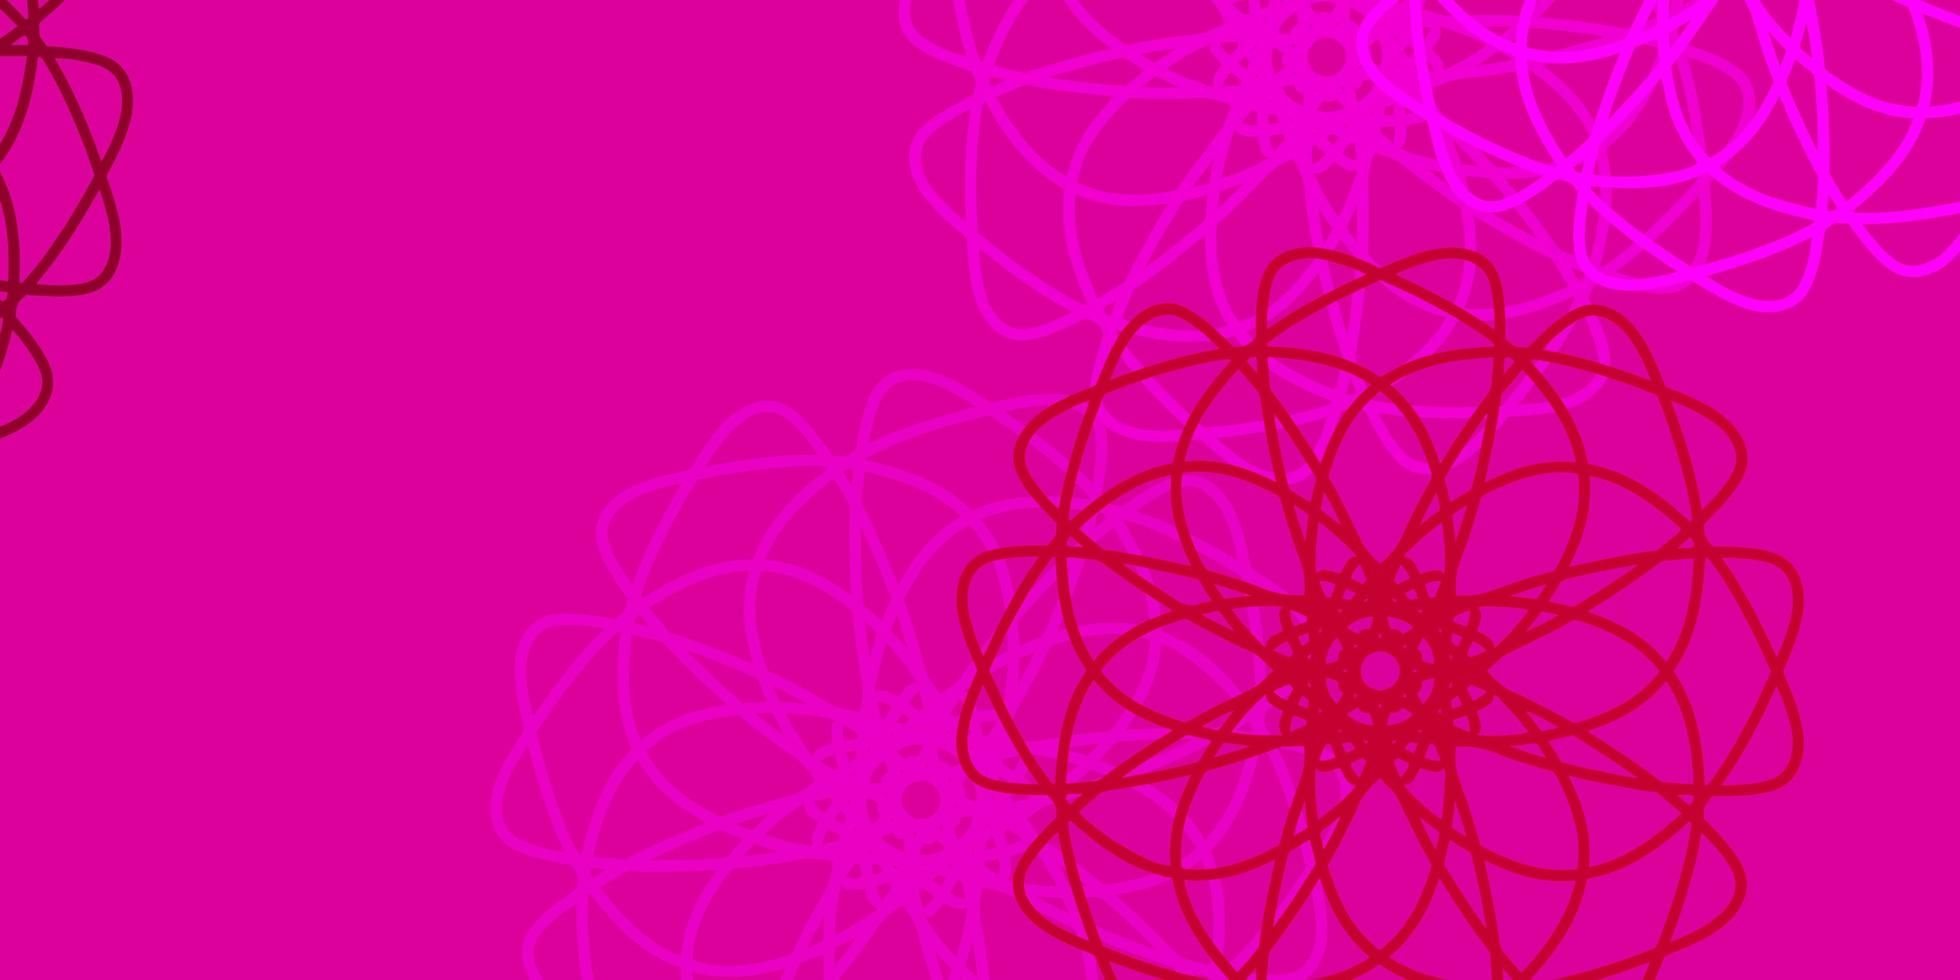 modello di doodle vettoriale rosa chiaro con fiori.